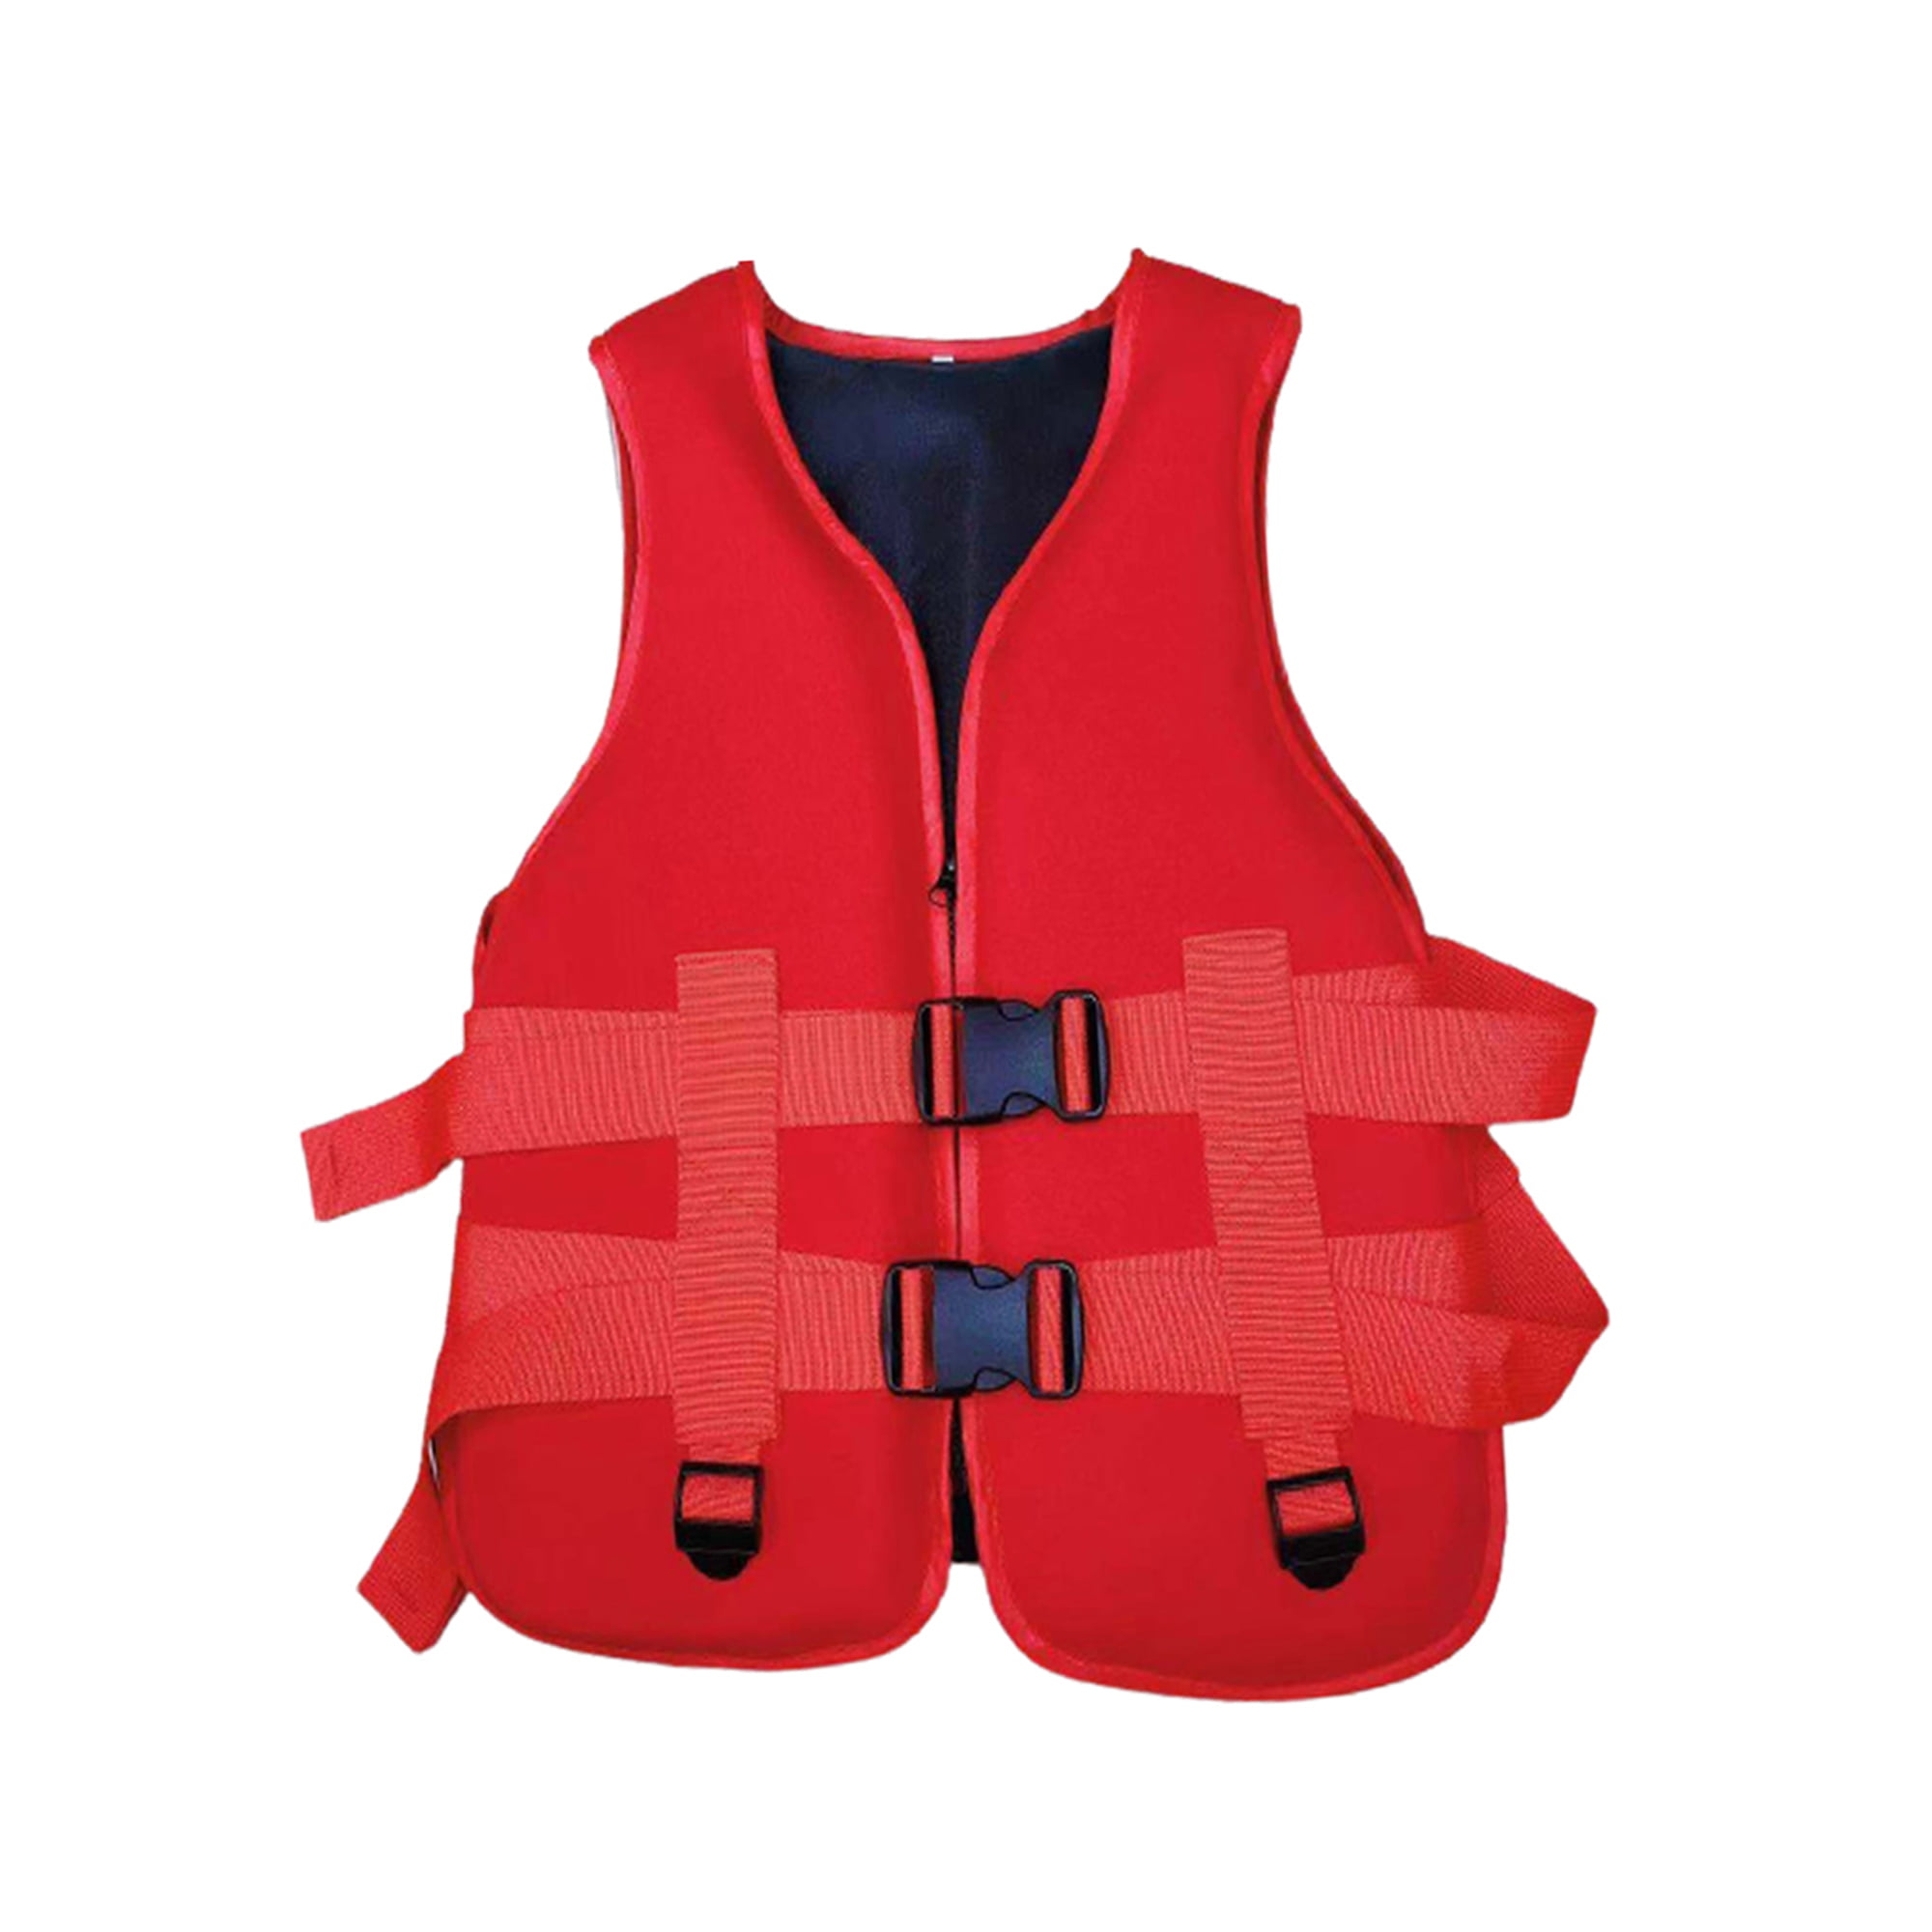 Details about   Summer Girl Children Safety Neoprene Life Vests Jacket Floating Kid Swimming 